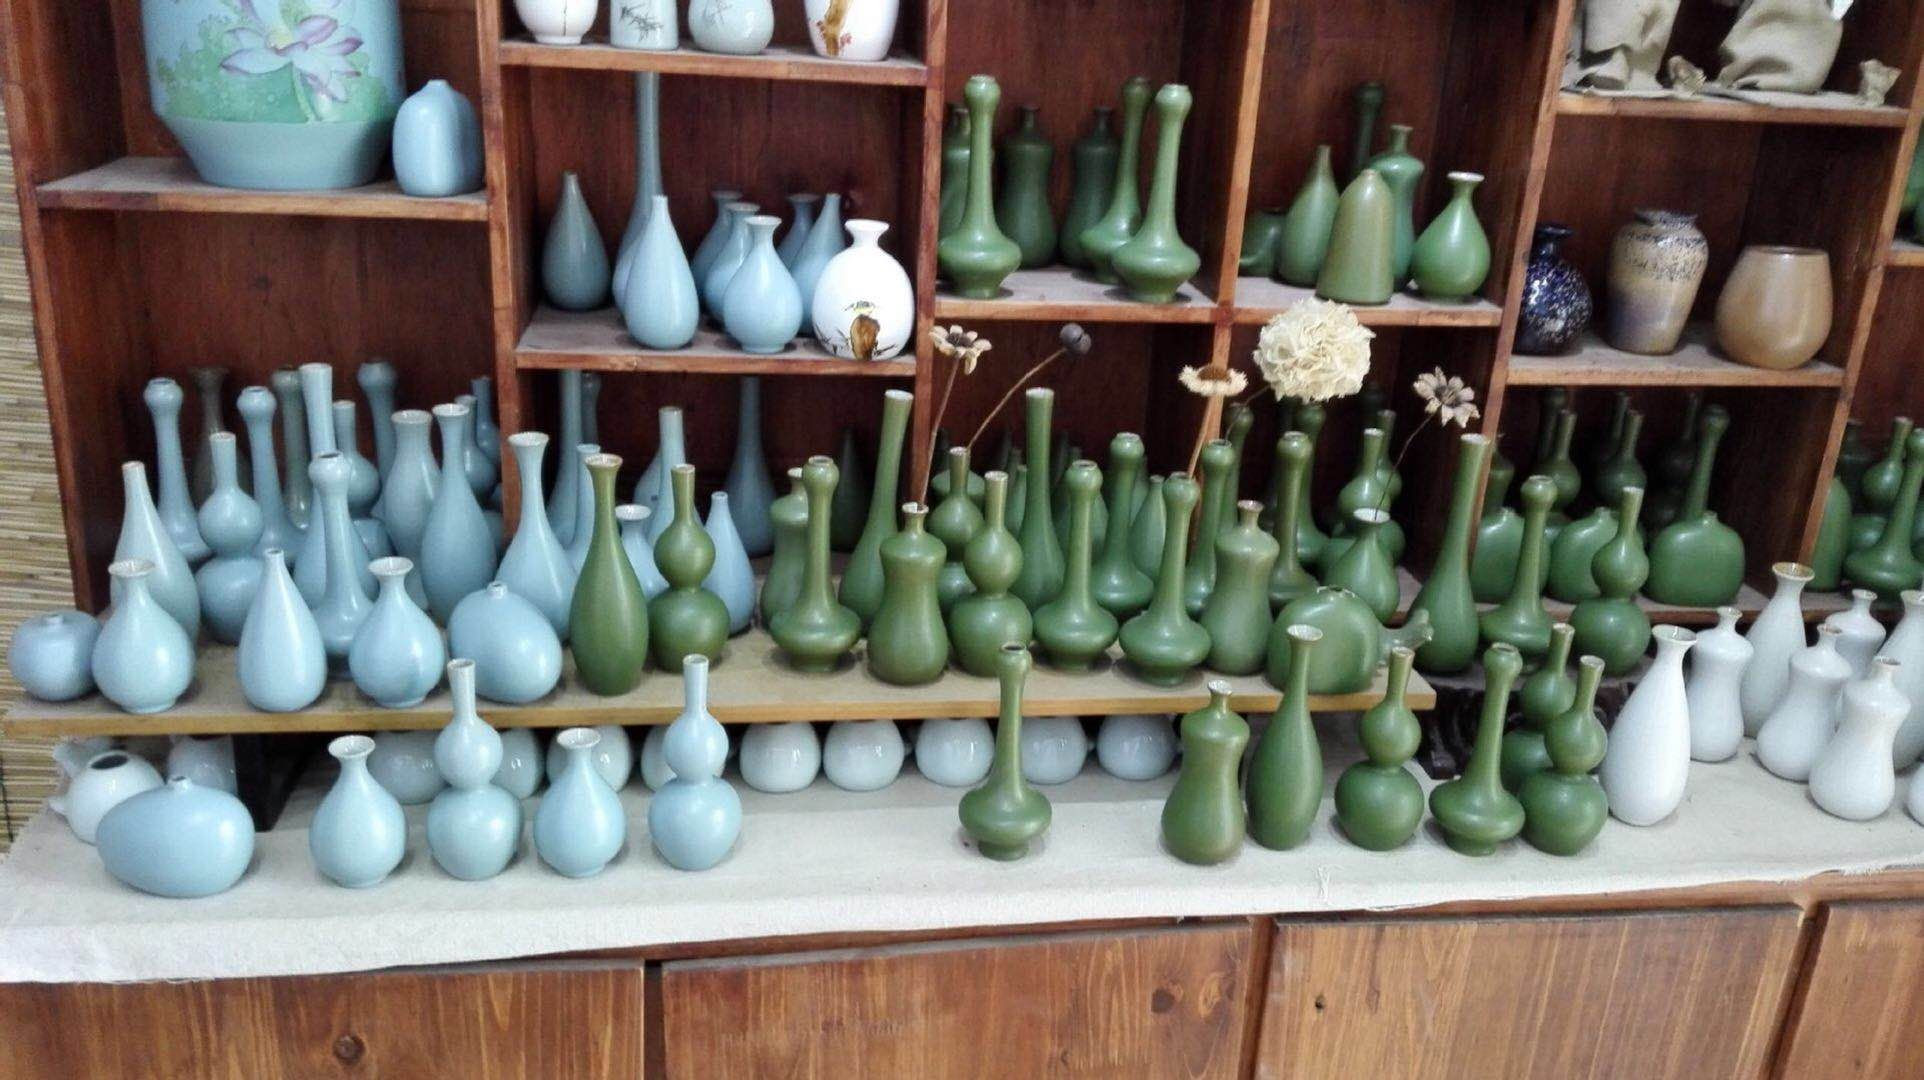 italian pottery vase of ceramic bud vase awesome jingdezhen handicraft ceramic vase with with regard to ceramic bud vase awesome jingdezhen handicraft ceramic vase with green glaze and floral